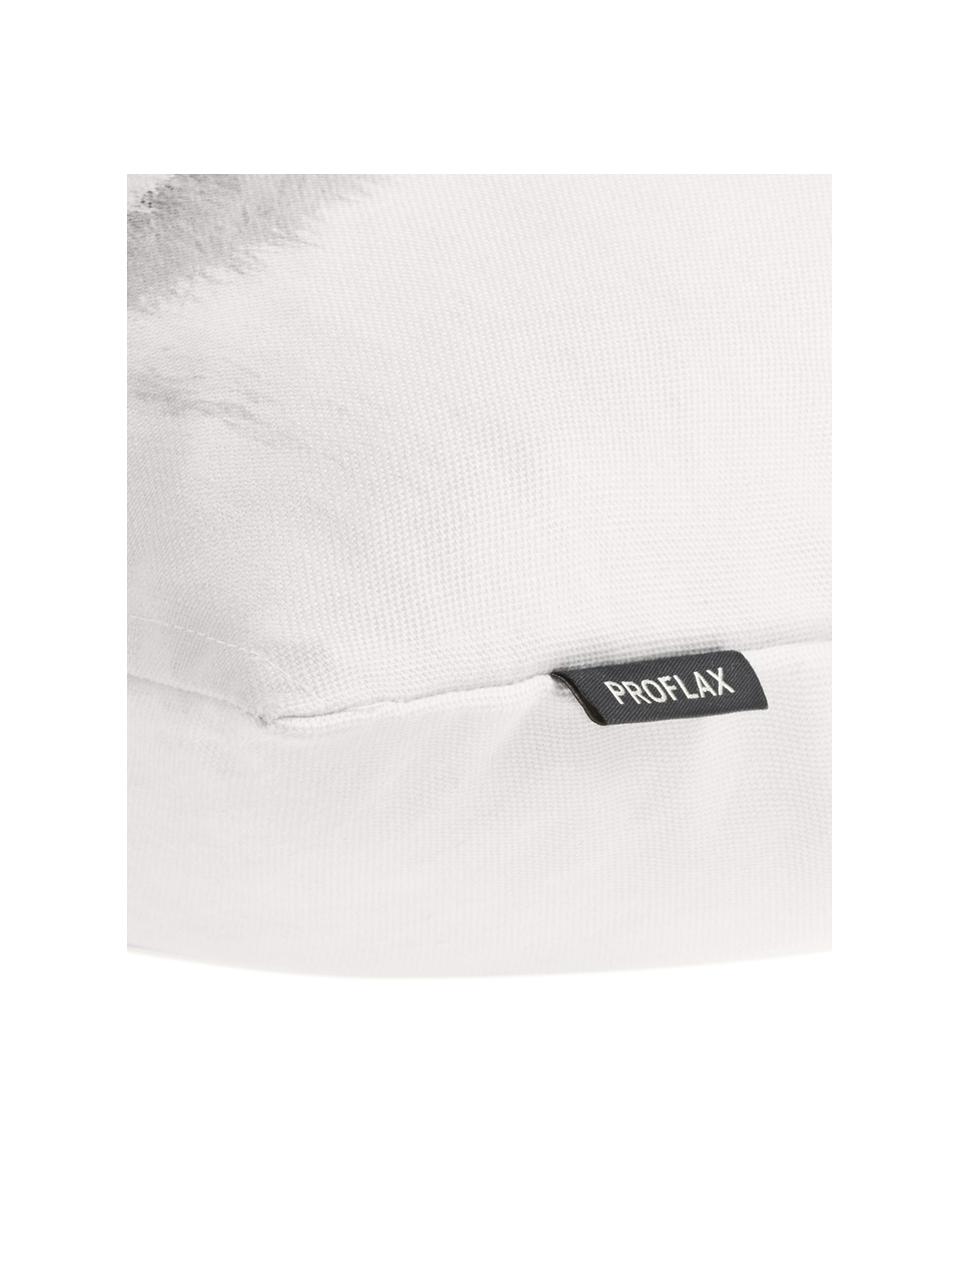 Kissenhülle Cool mit winterlichem Motiv, Baumwolle, Weiß, Grautöne, 40 x 60 cm